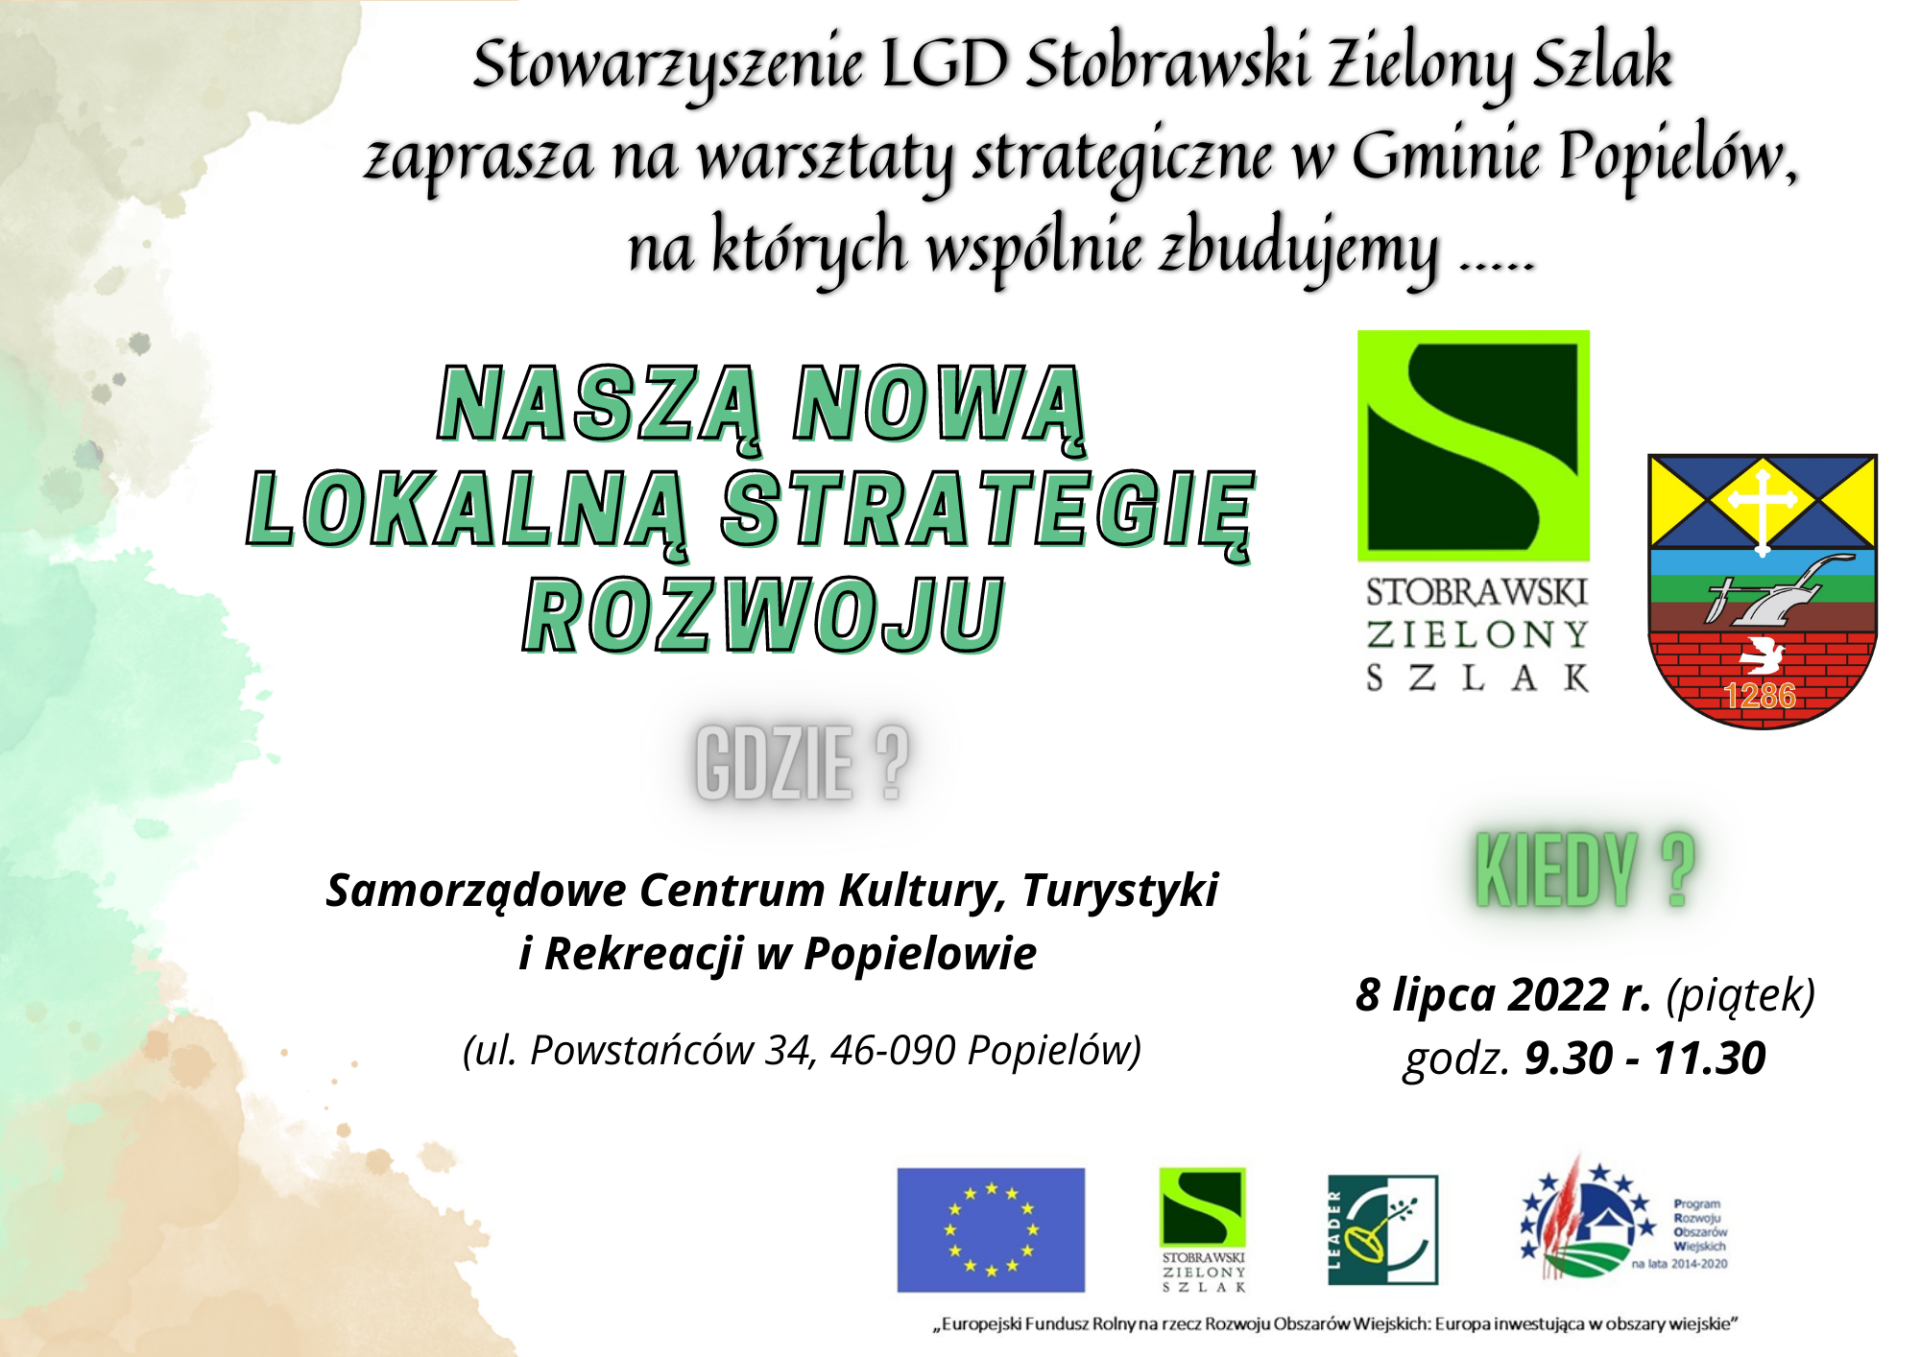 Stowarzyszenie LGD Stobrawski Zielony Szlak zaprasza na warsztaty strategiczne - 8 lipca 2022 r.